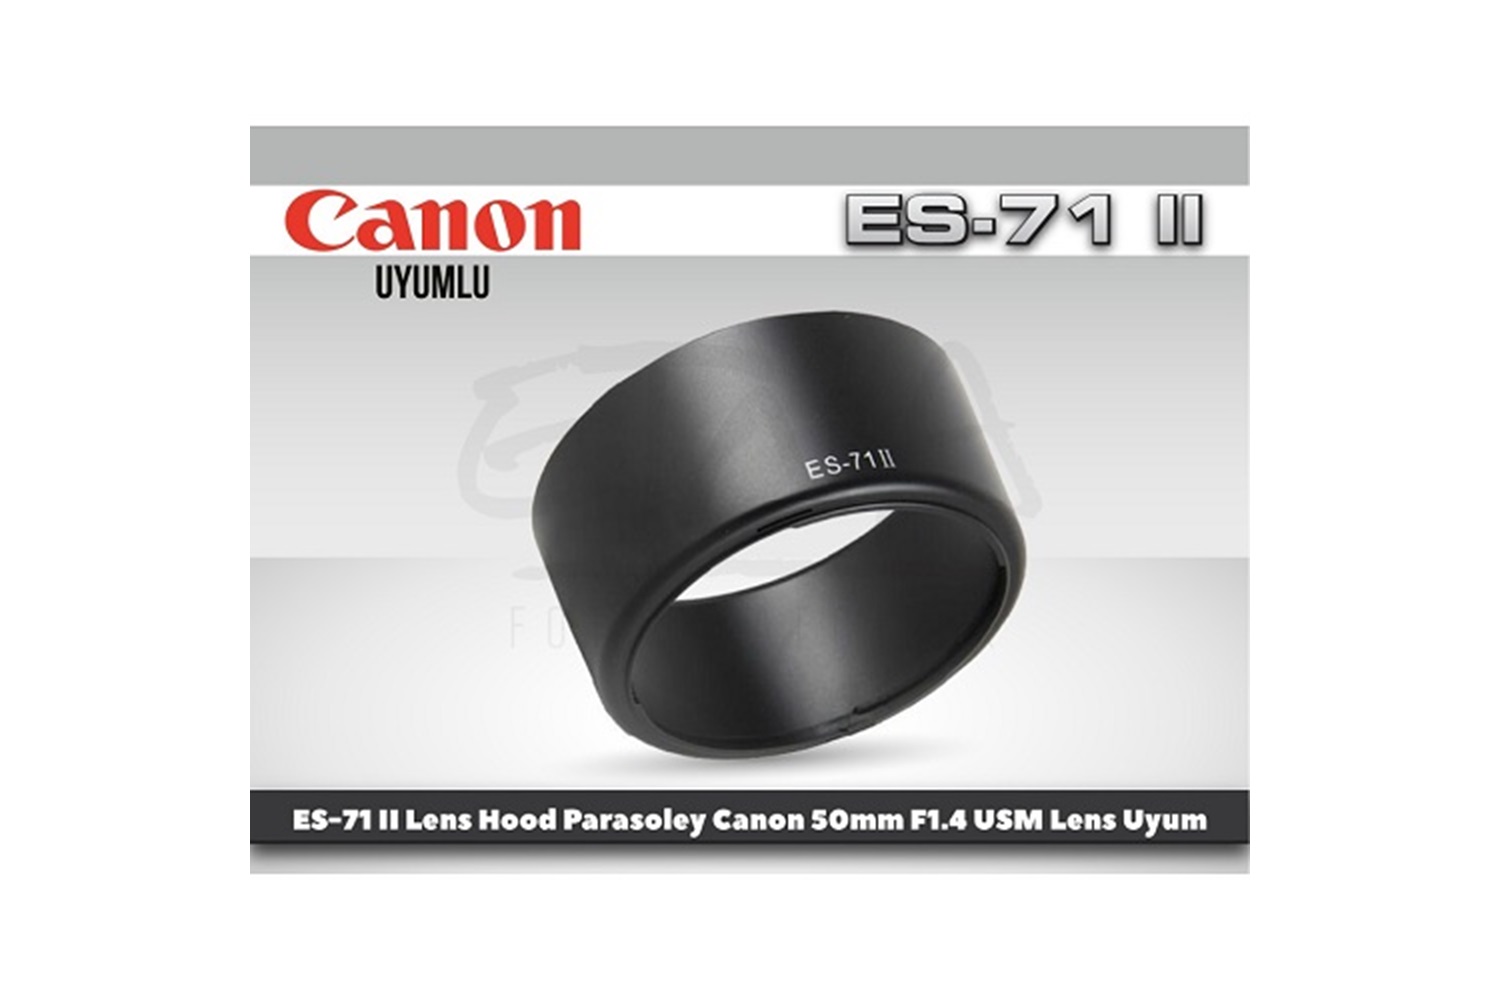 Tewise Canon ES-71 II Parasoley 50mm F1.4 USM Lens Uyumlu